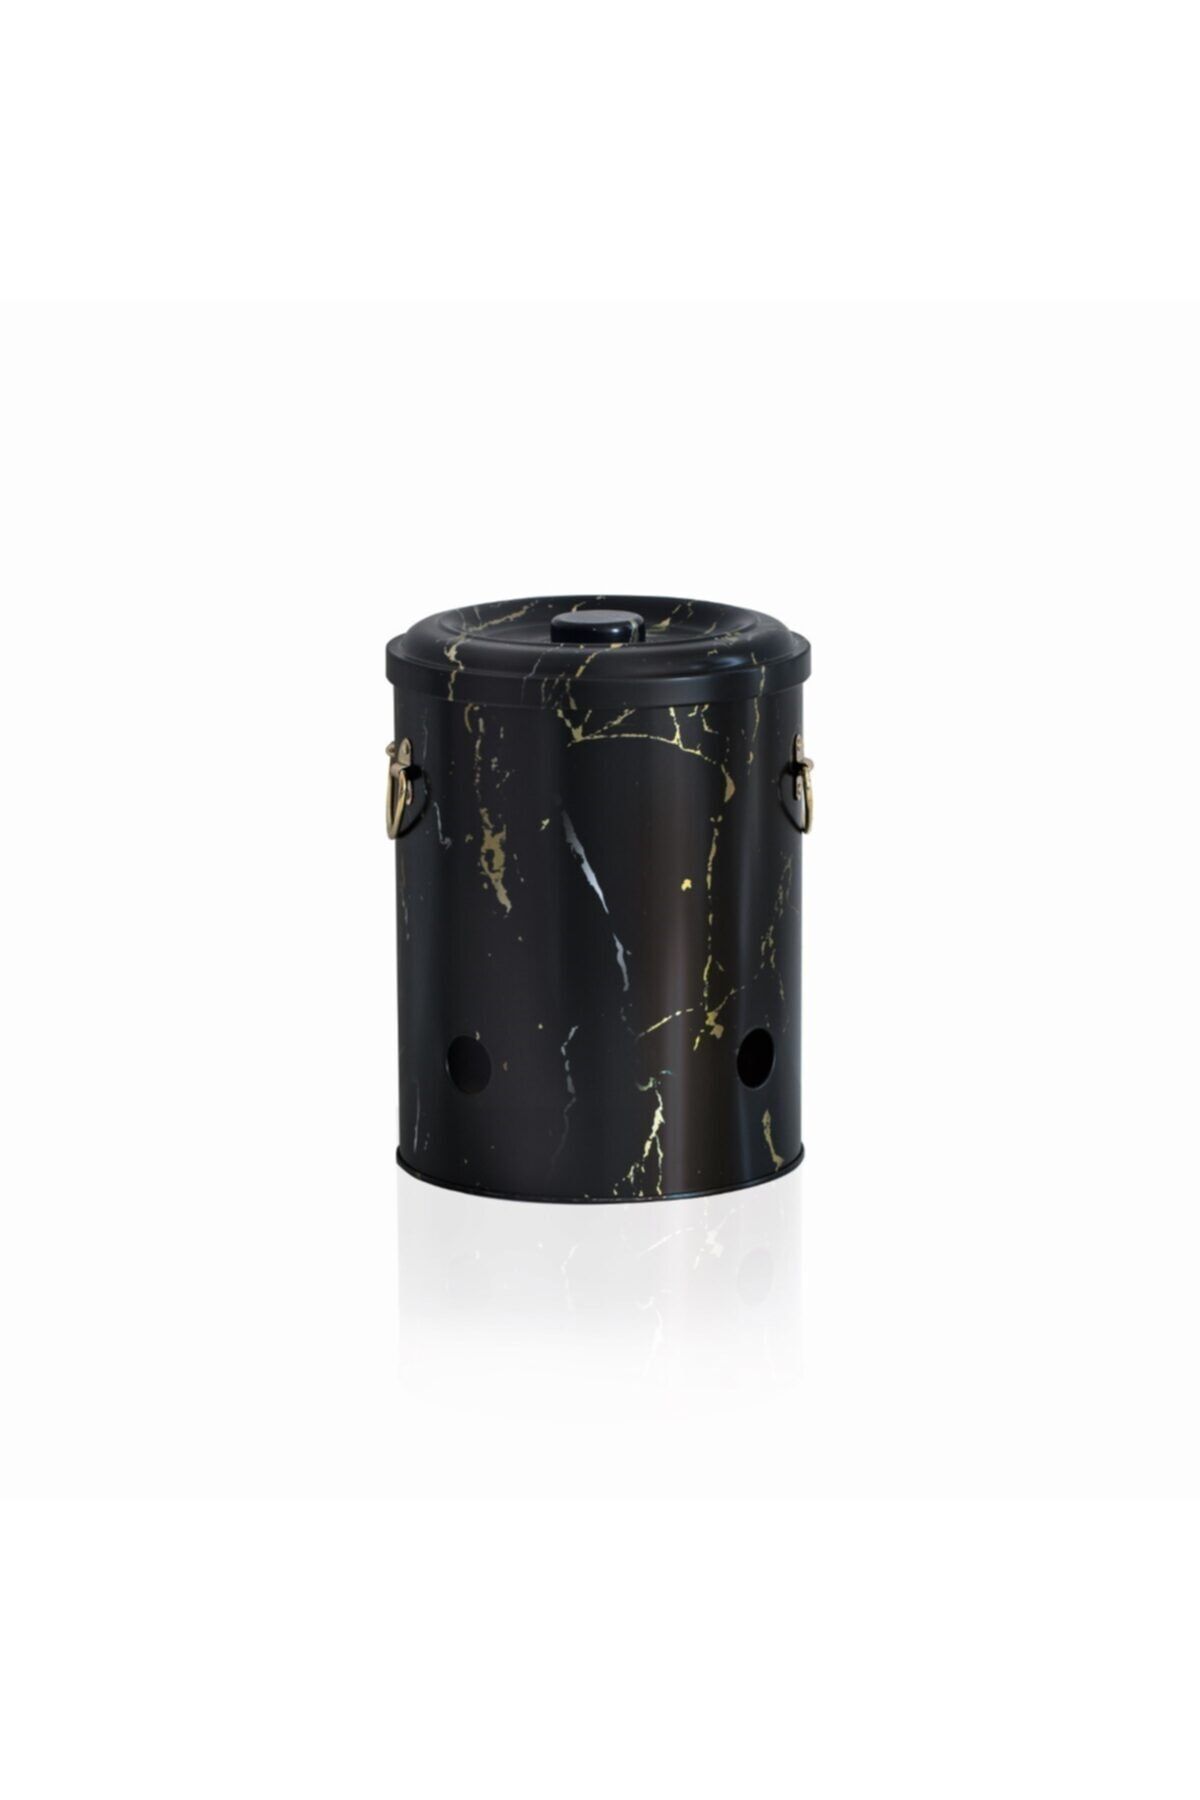 Marble Black Desenli Metal Soğanlık, 17.5 x 22.5 cm, 5 lt